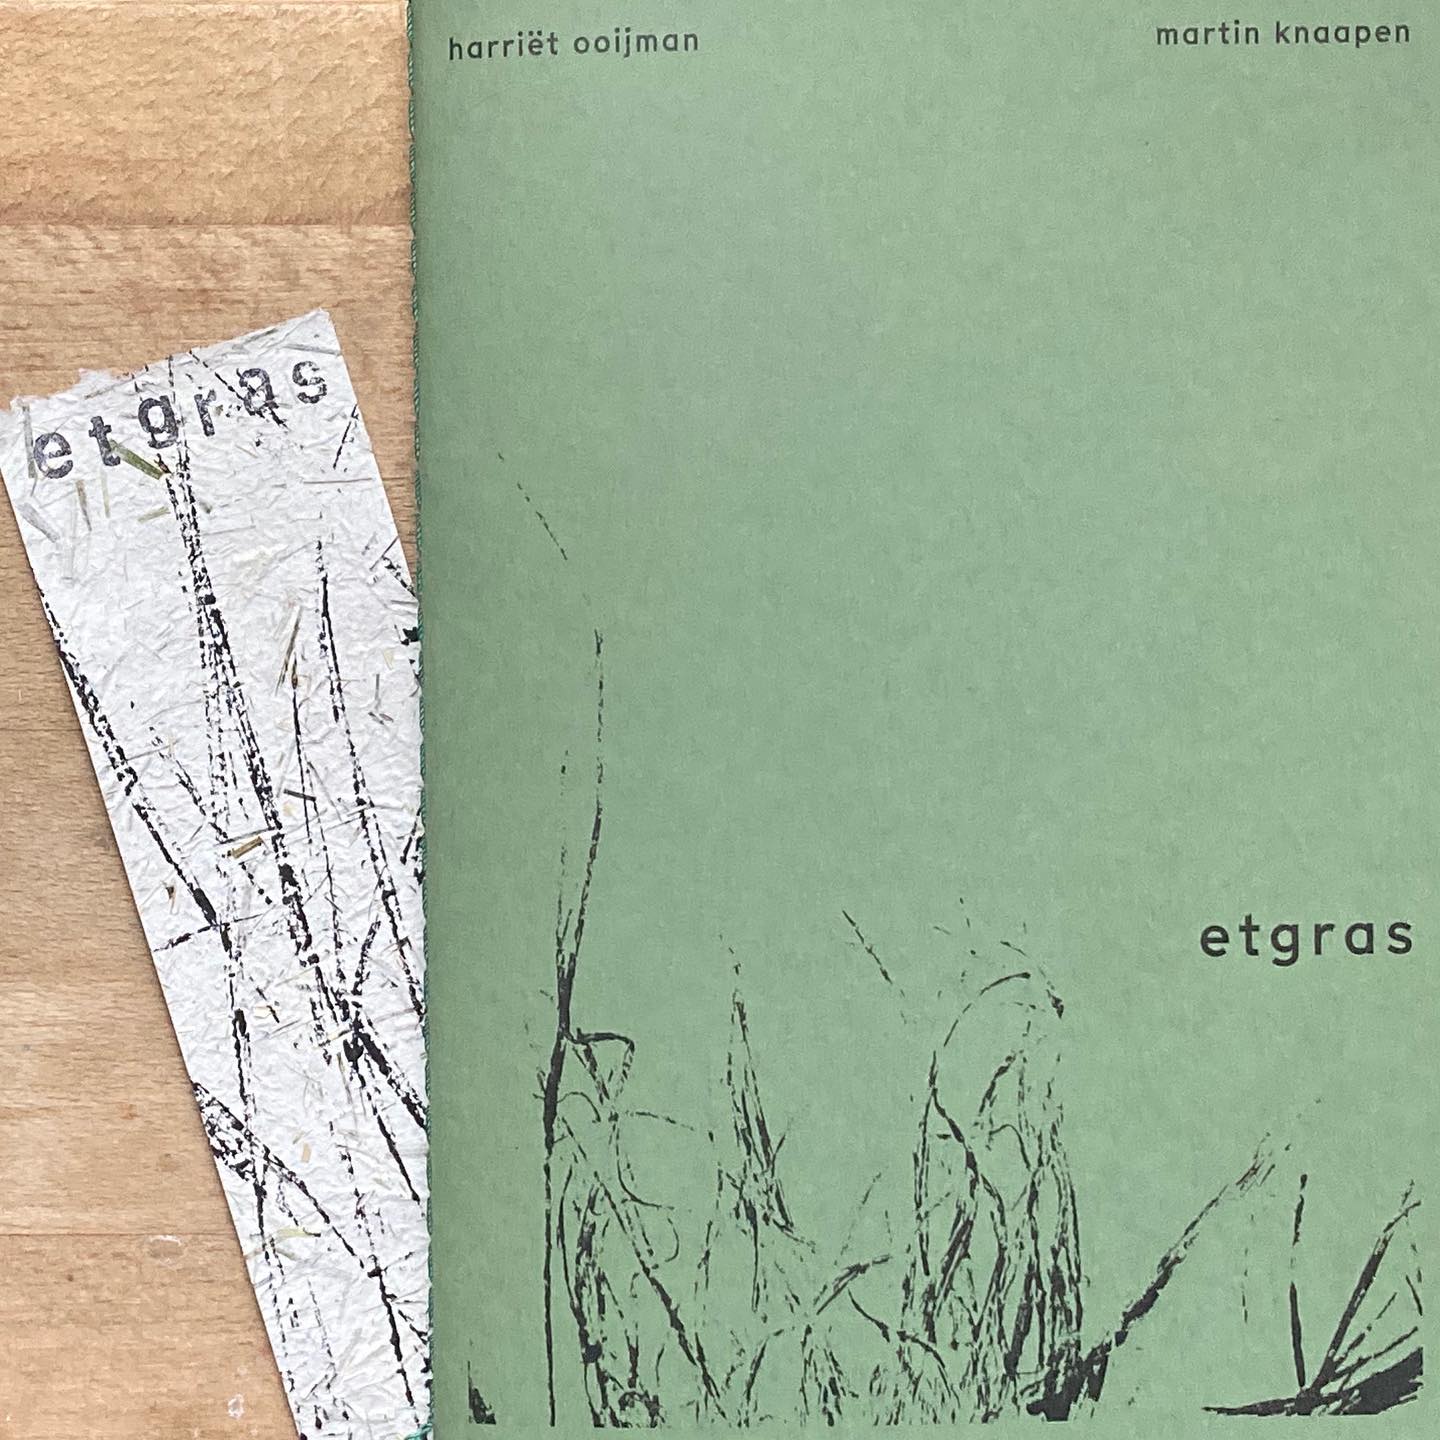 Kunstenares en dichter brengen bijzonder boek ‘Etgras’ uit